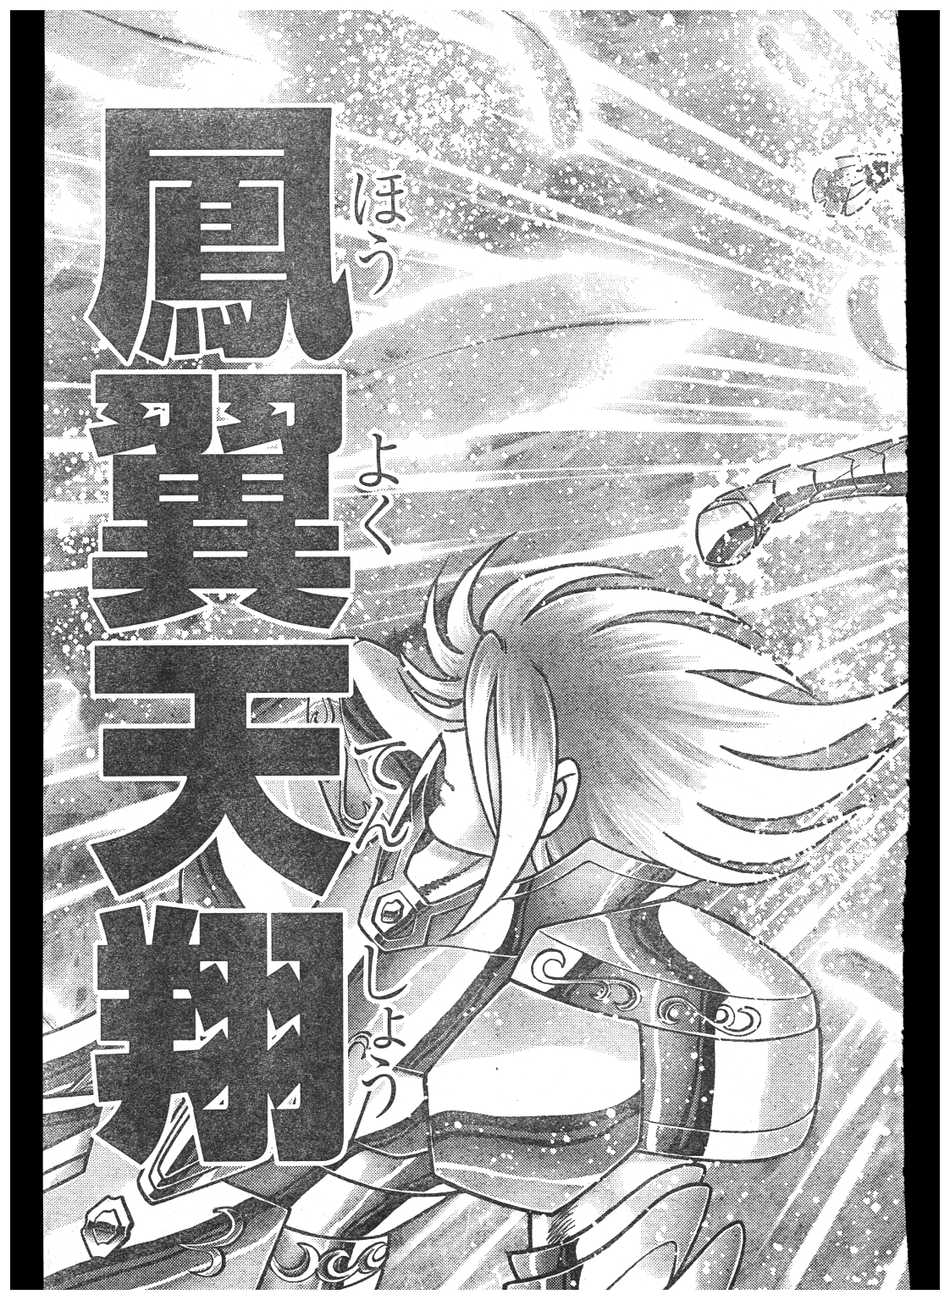 Novo mangá pela JBC: “Dragon Quest: Dai no Daibouken”